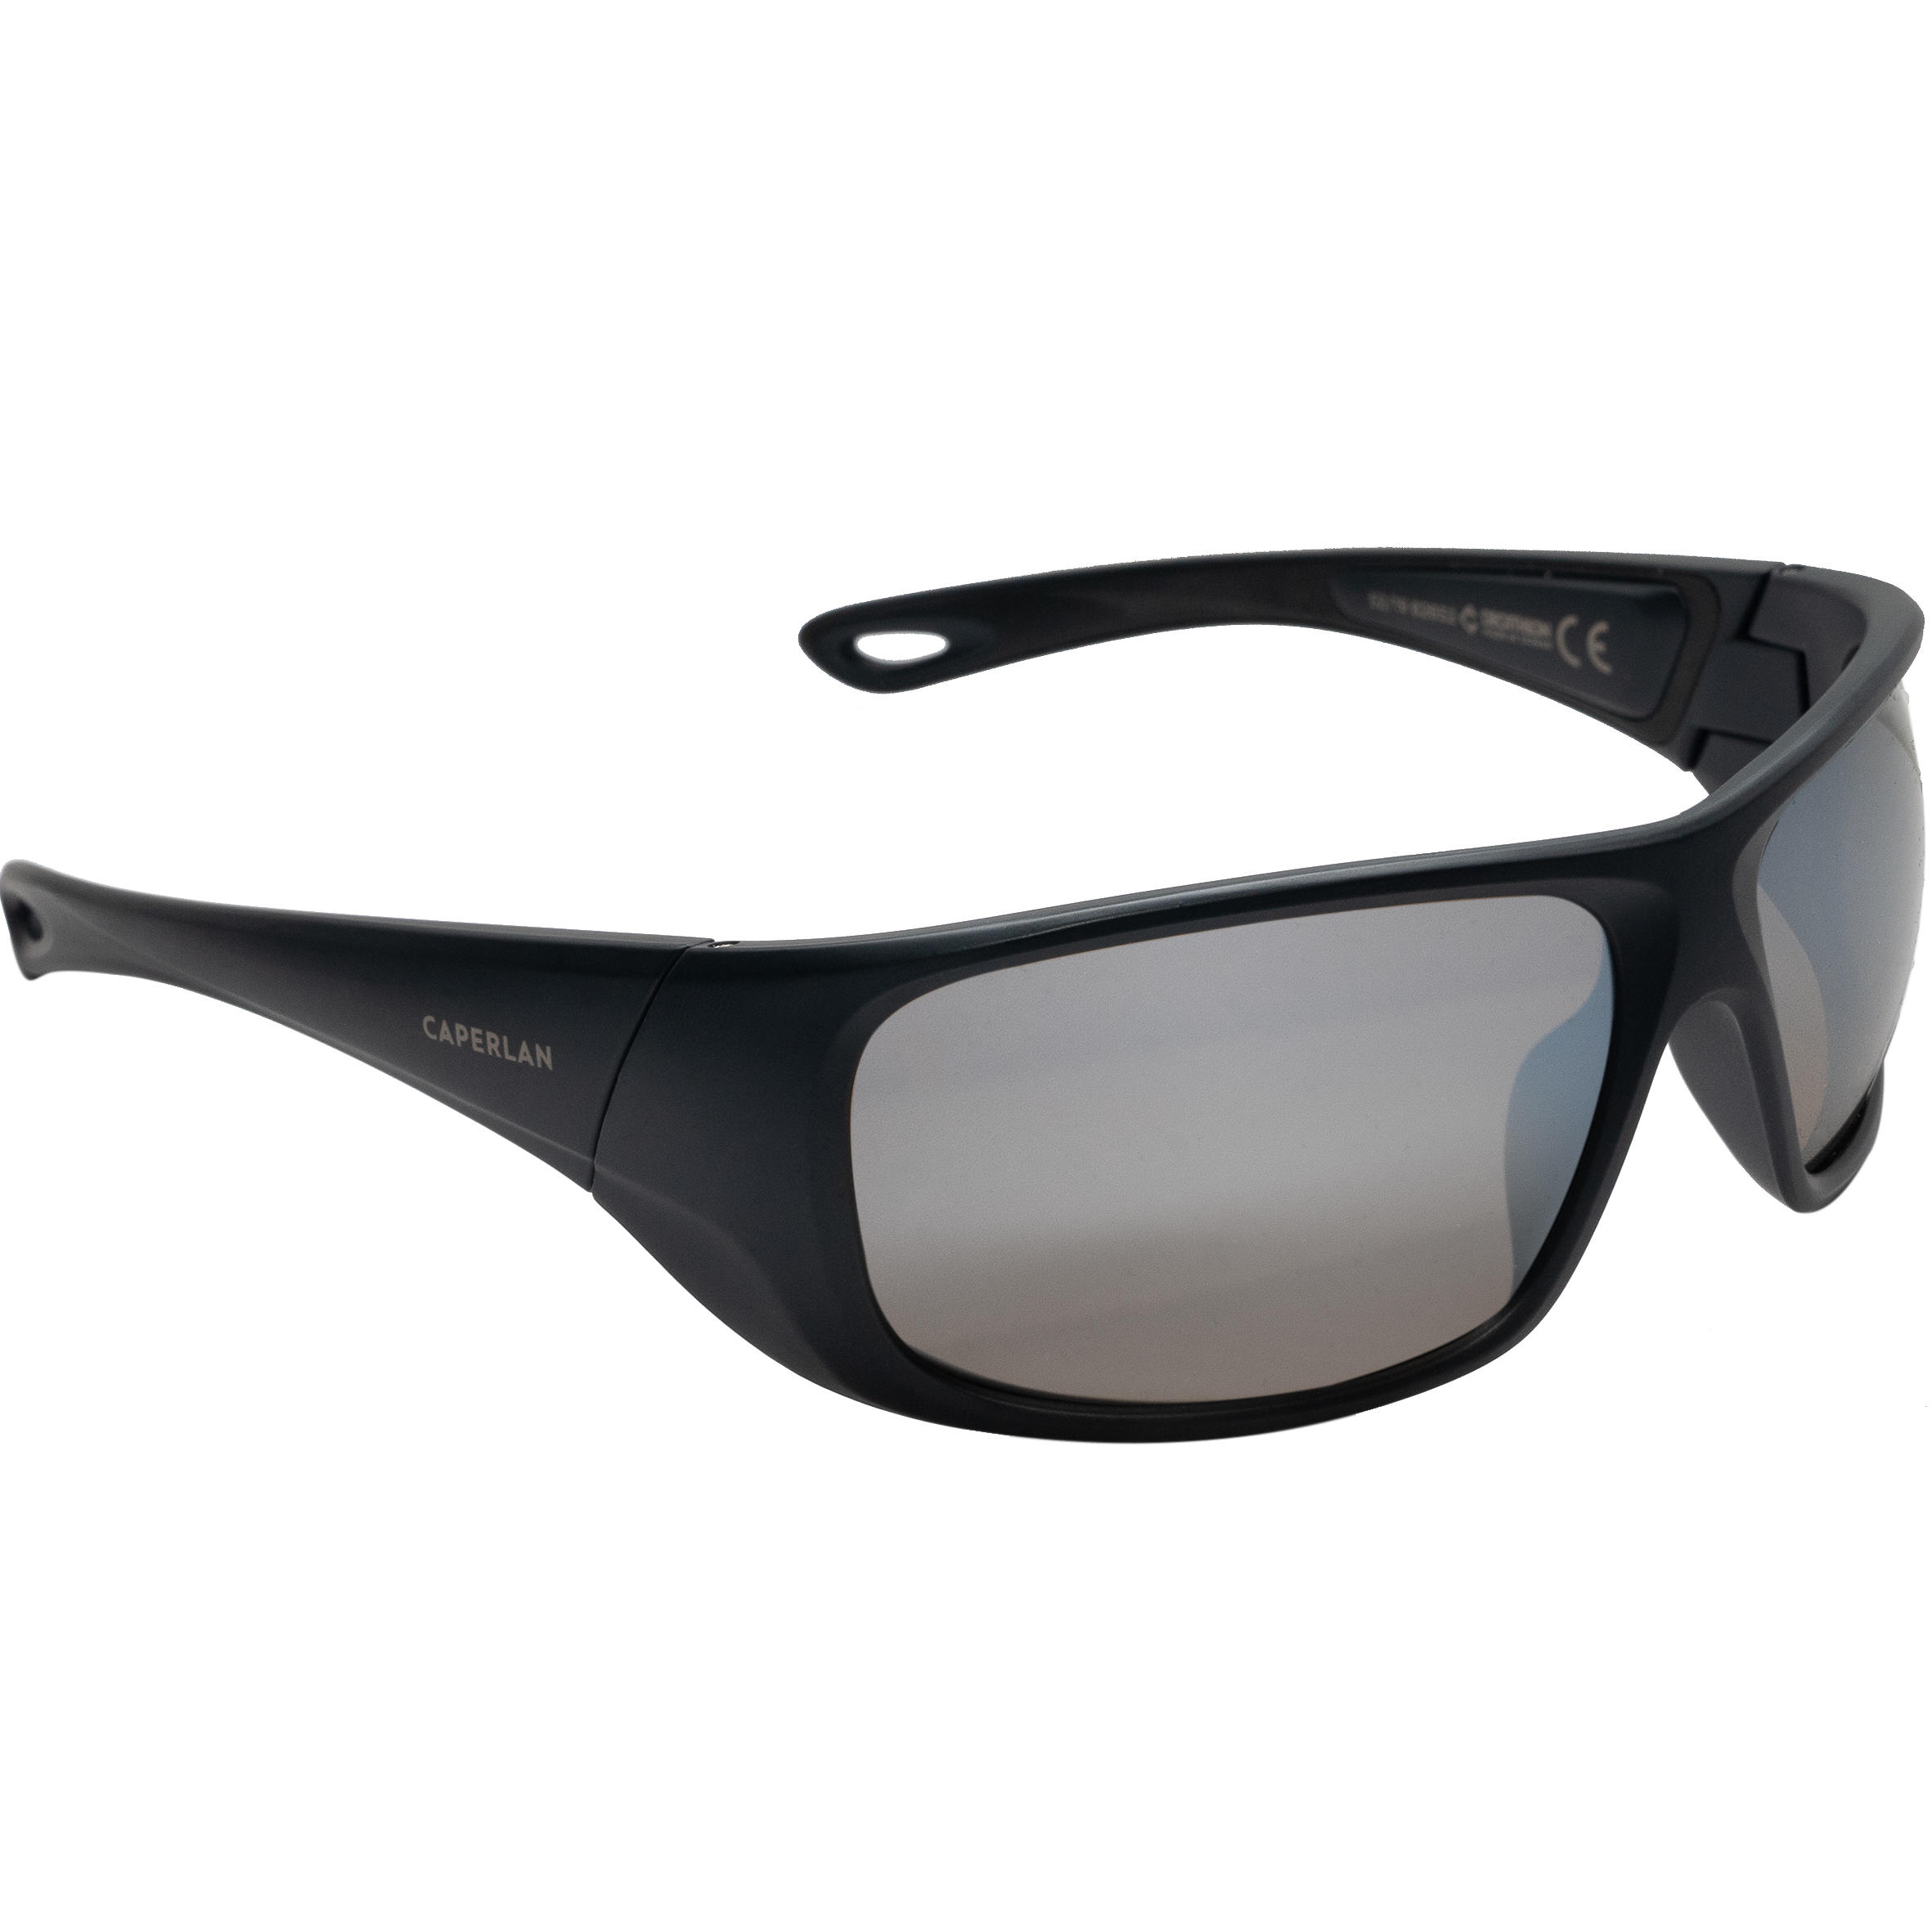 Fishing Polarizing and Floating Sunglasses - Skyrazer 500 Grey